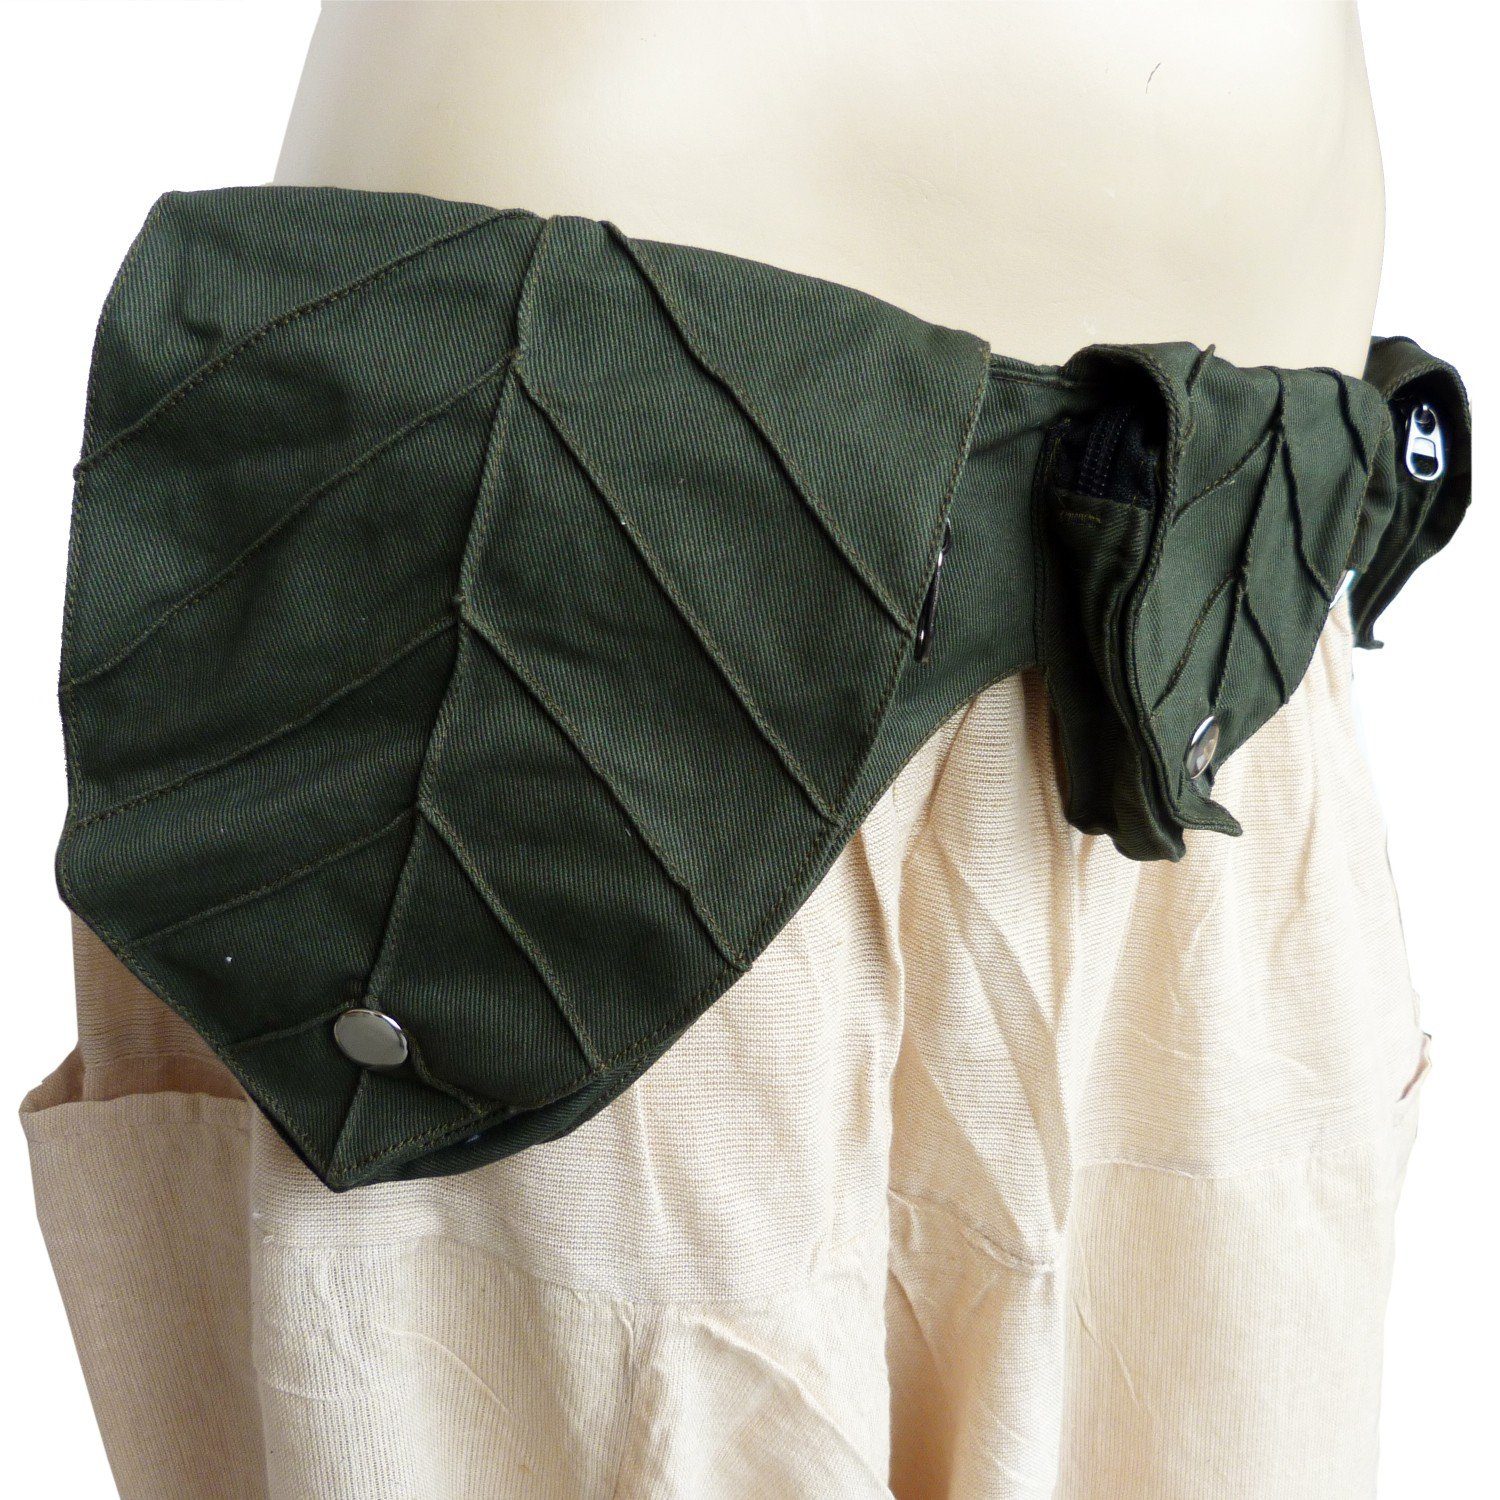 verstellbar Bauchtasche mit Blatt, Reißverschluss Druckknopf + individuell 4 Gürteltasche + Grün I SIMANDRA Hüfttasche Taschen